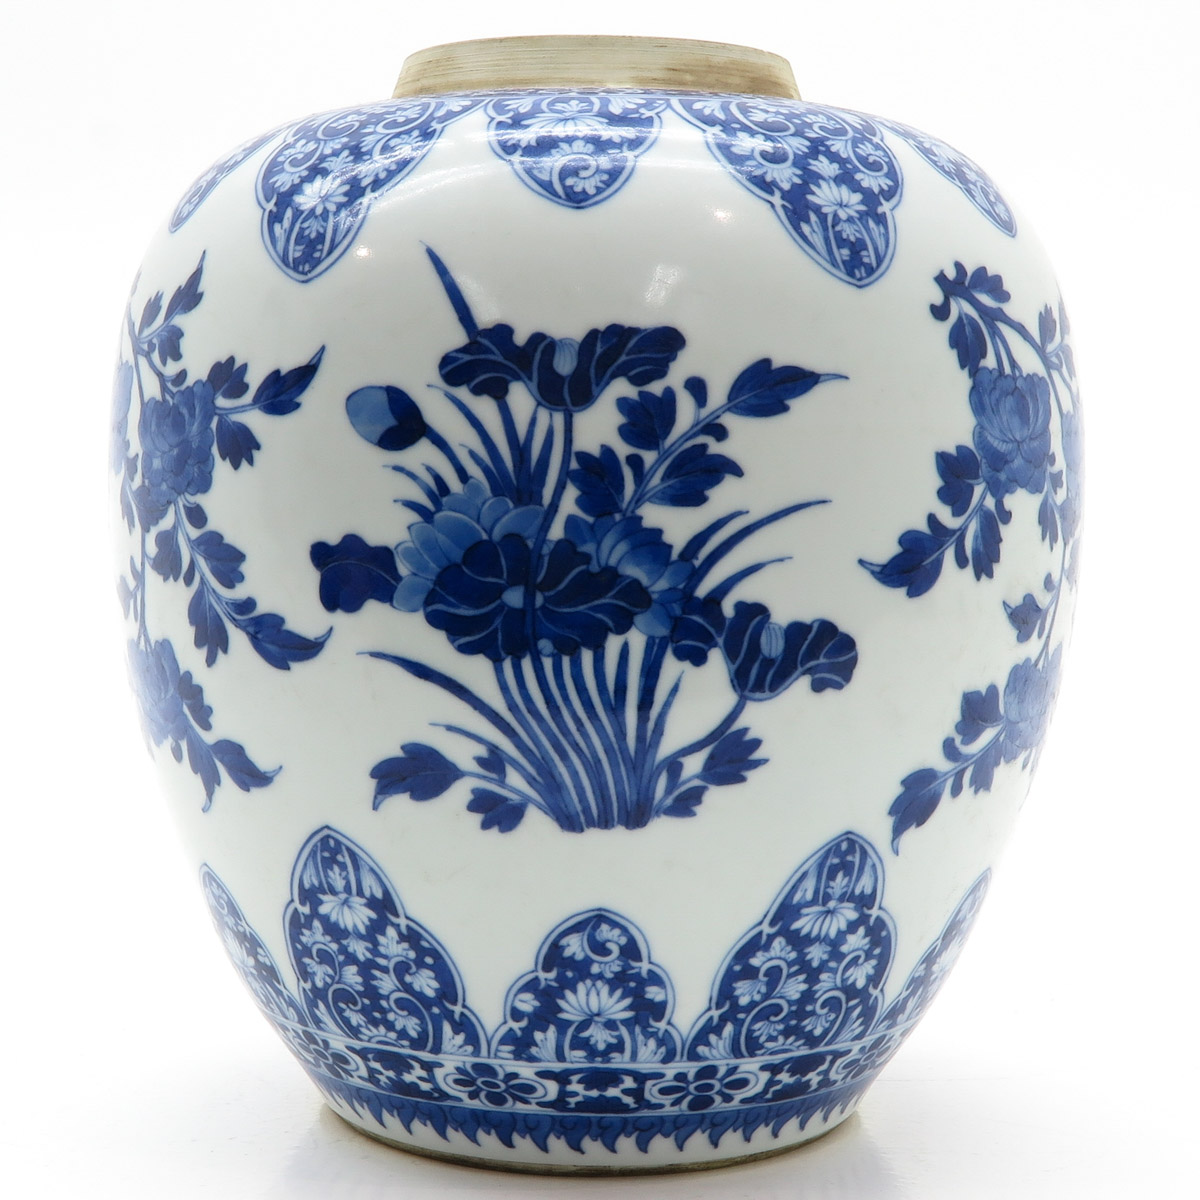 China Porcelain Ginger Jar - Image 2 of 6